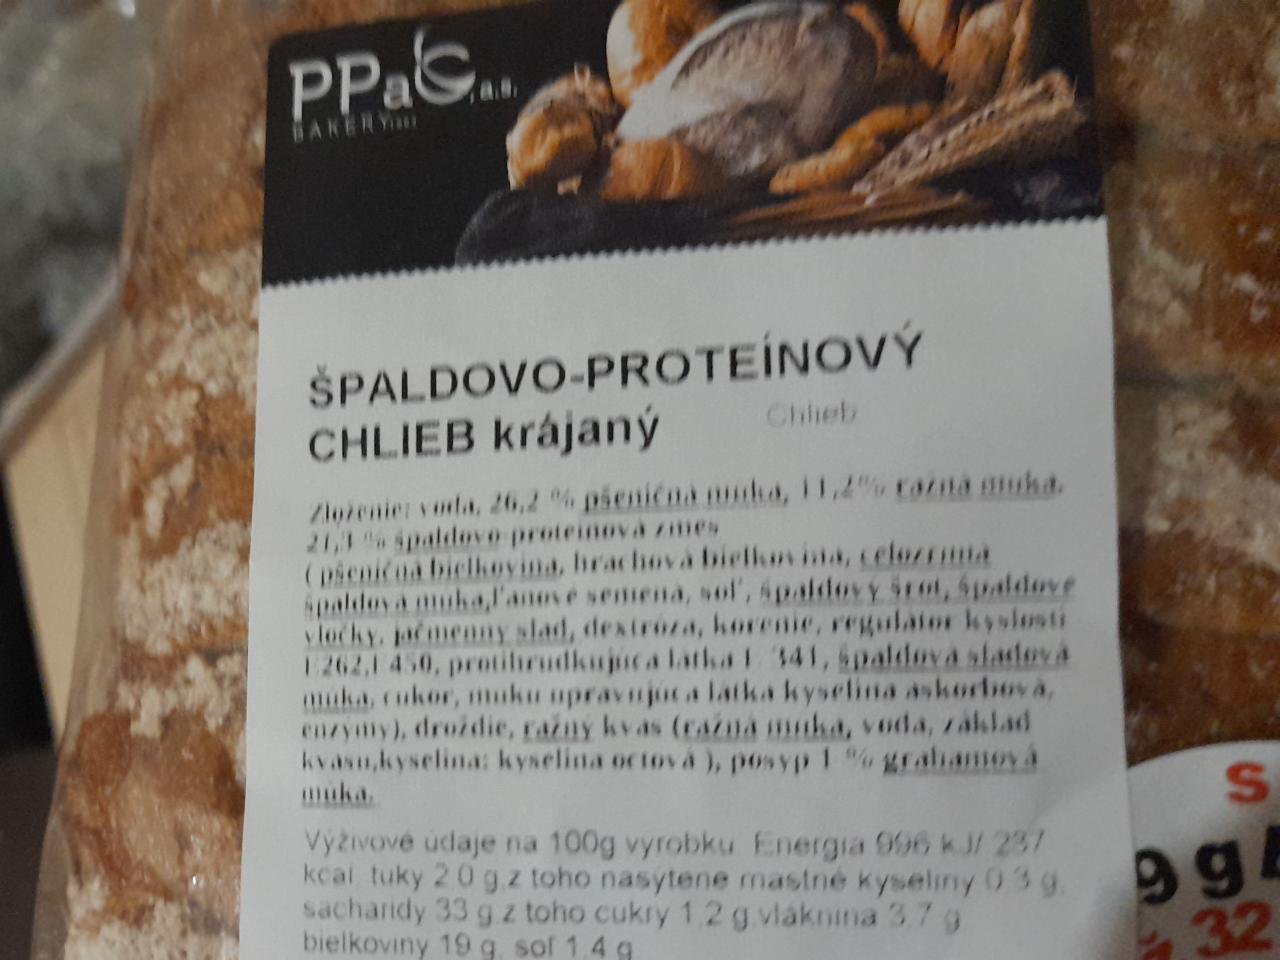 Fotografie - Špaldovo-proteínový chlieb krájaný PPaC